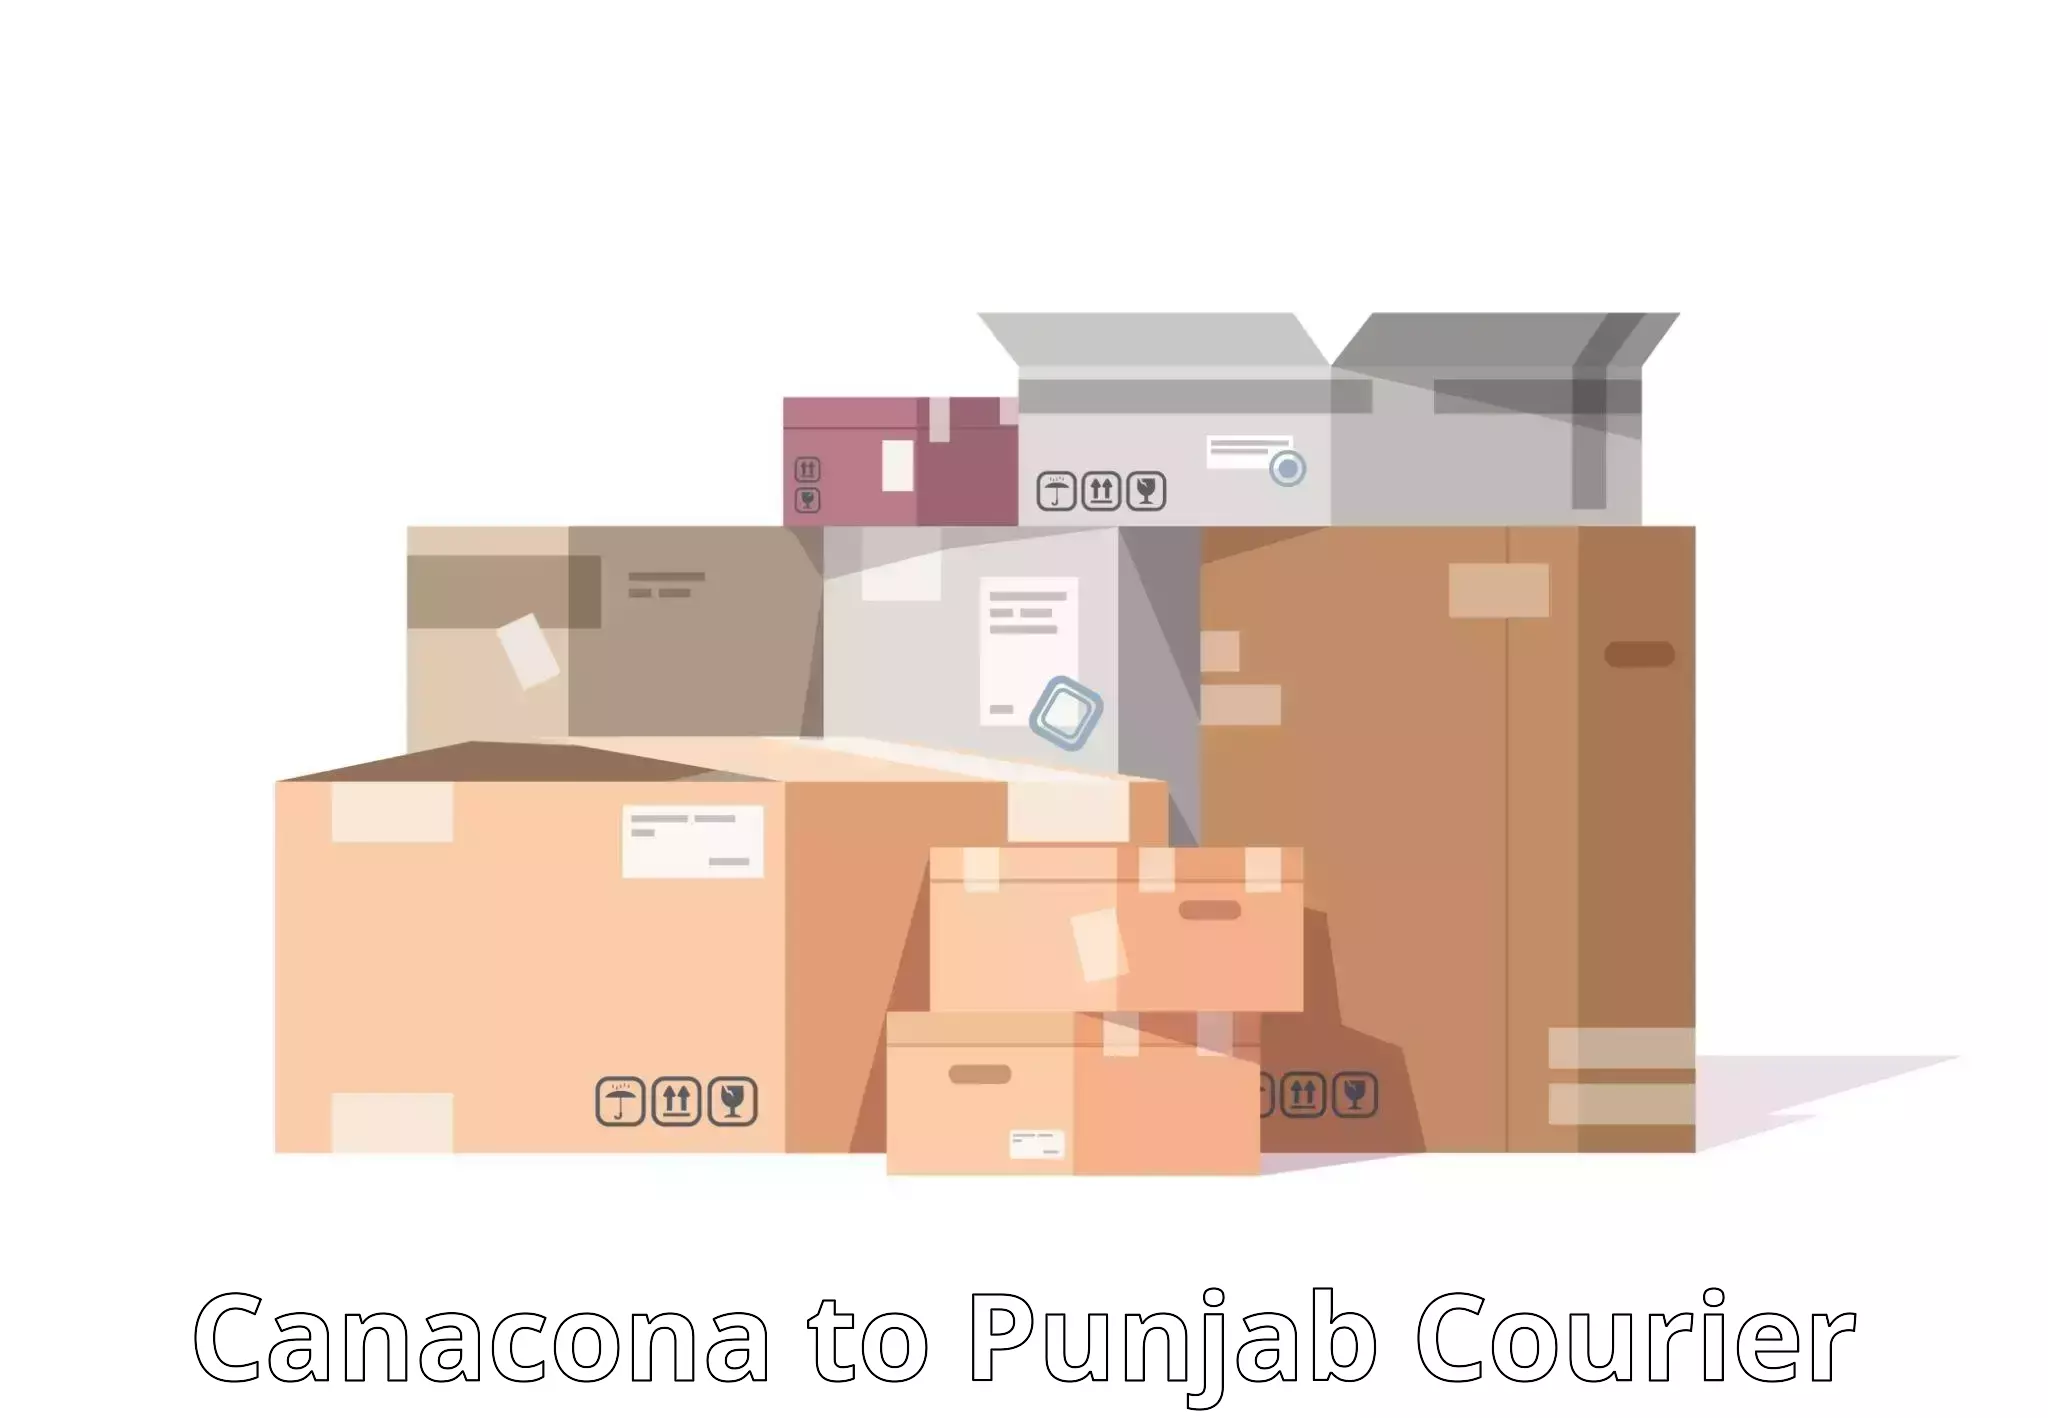 Courier service partnerships Canacona to Zira